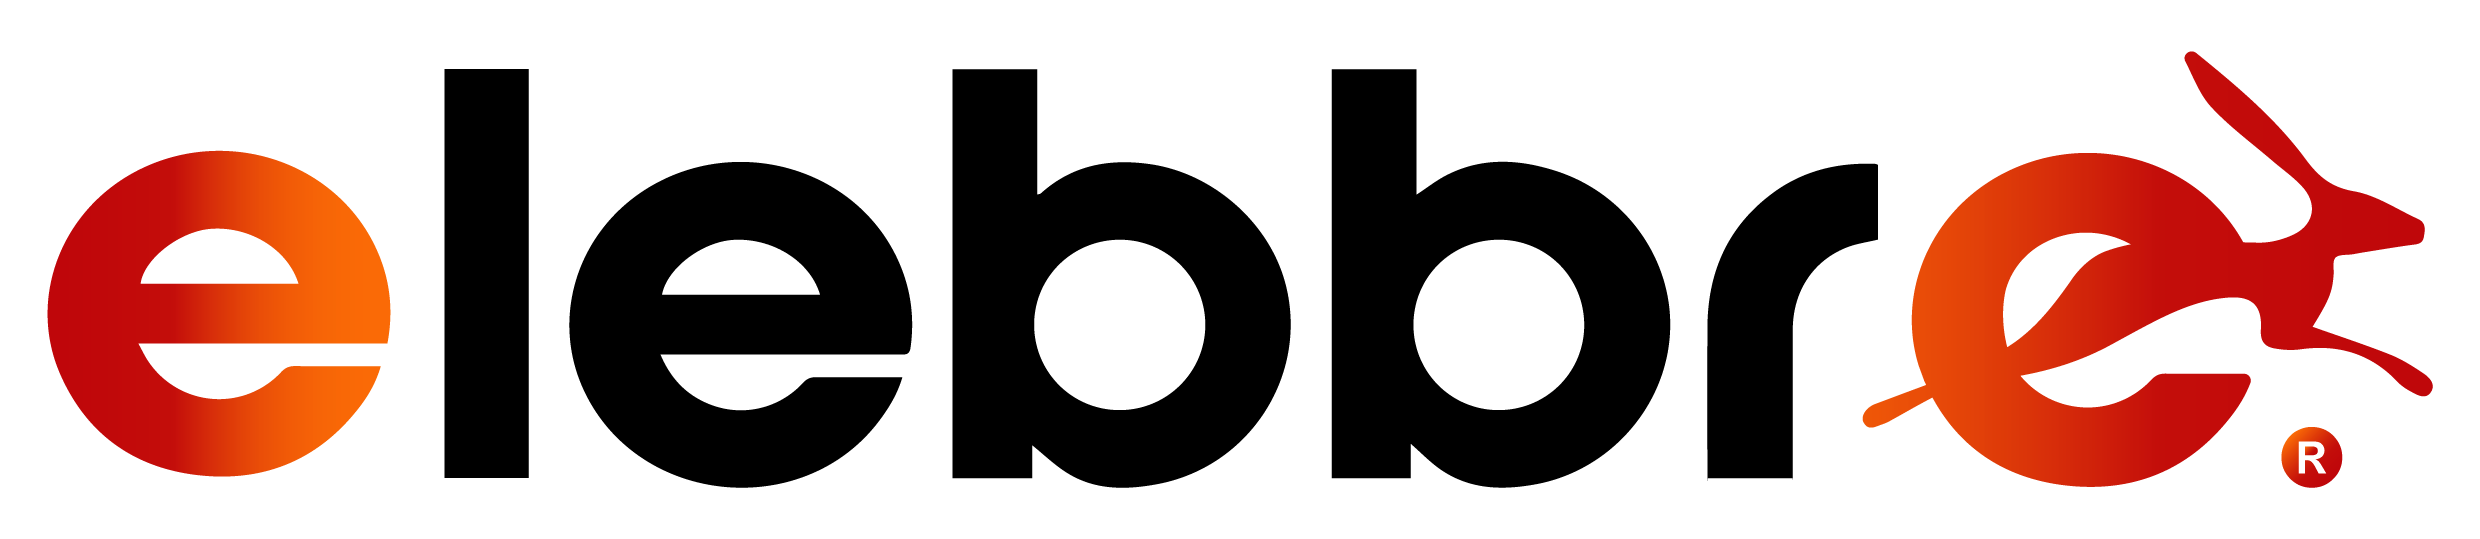 Logo Elebbre